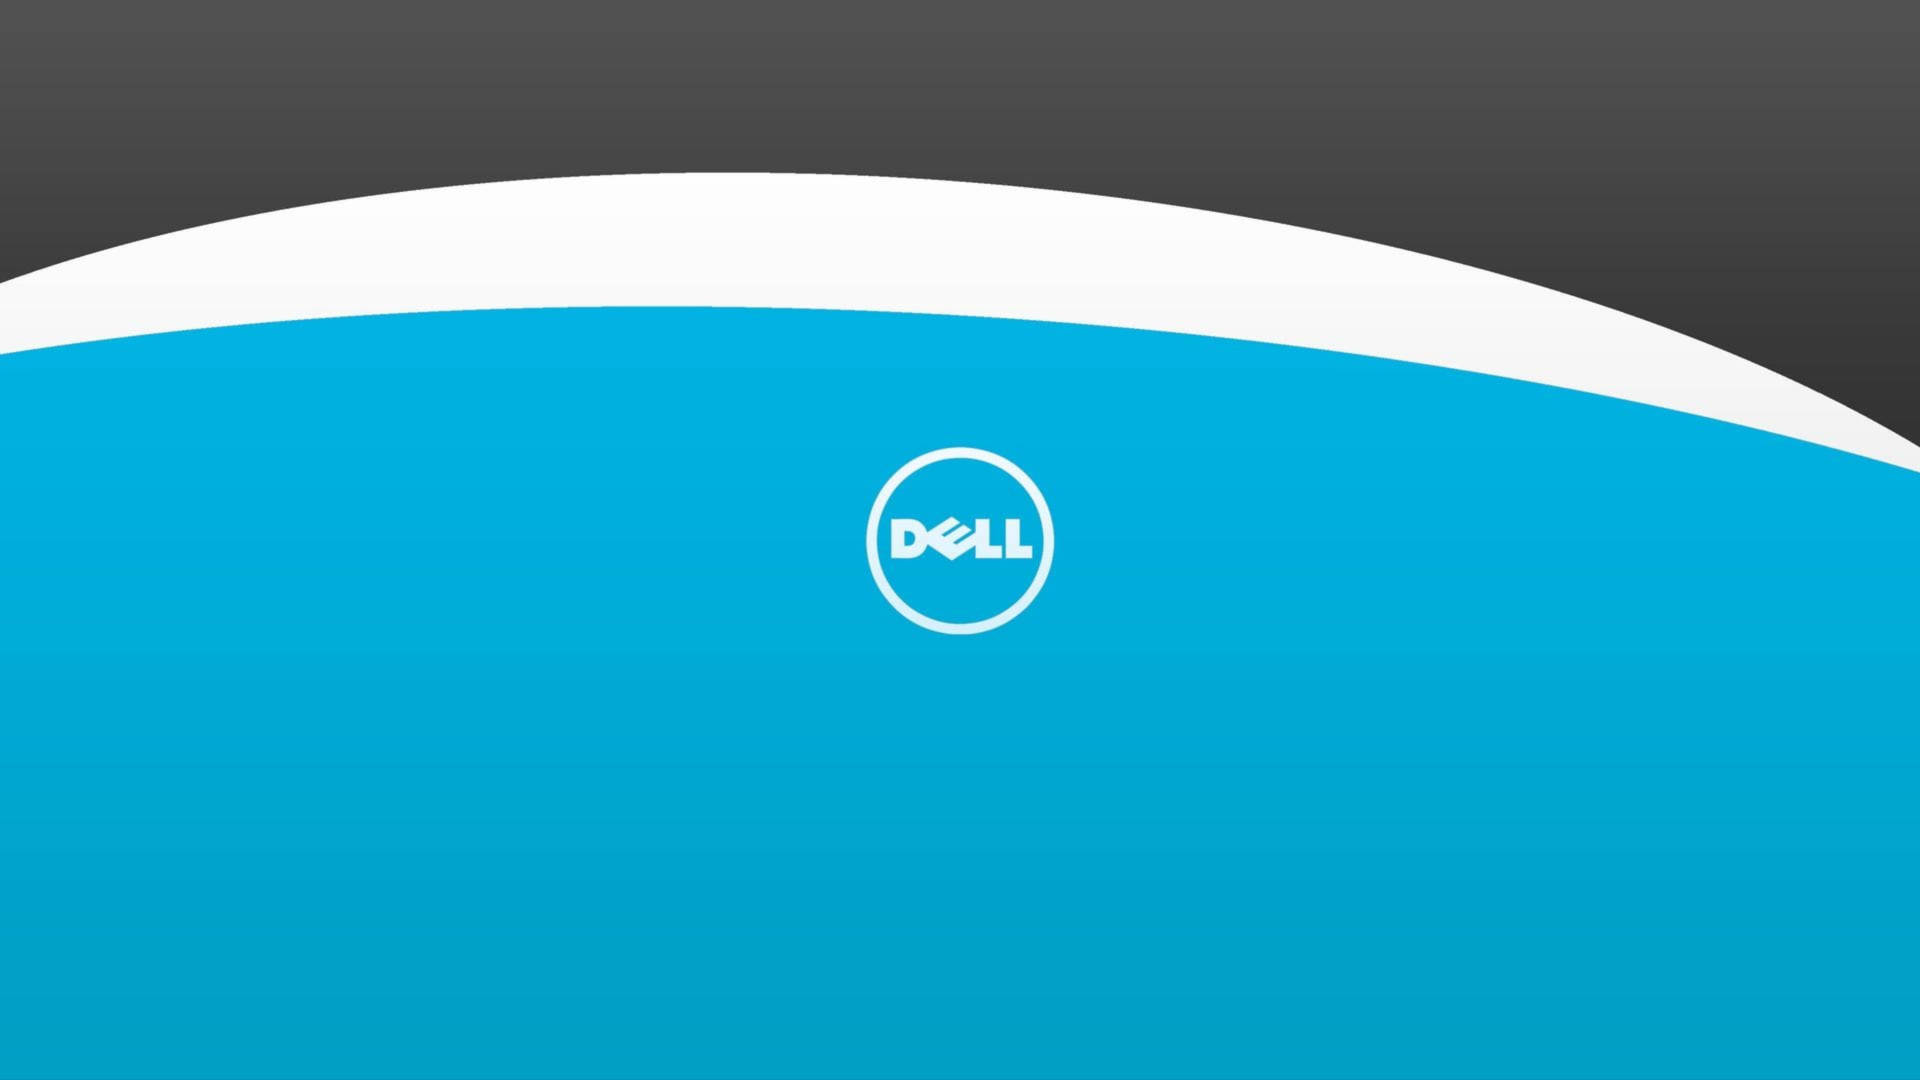 Dell 4k-logo På Blåt Wallpaper